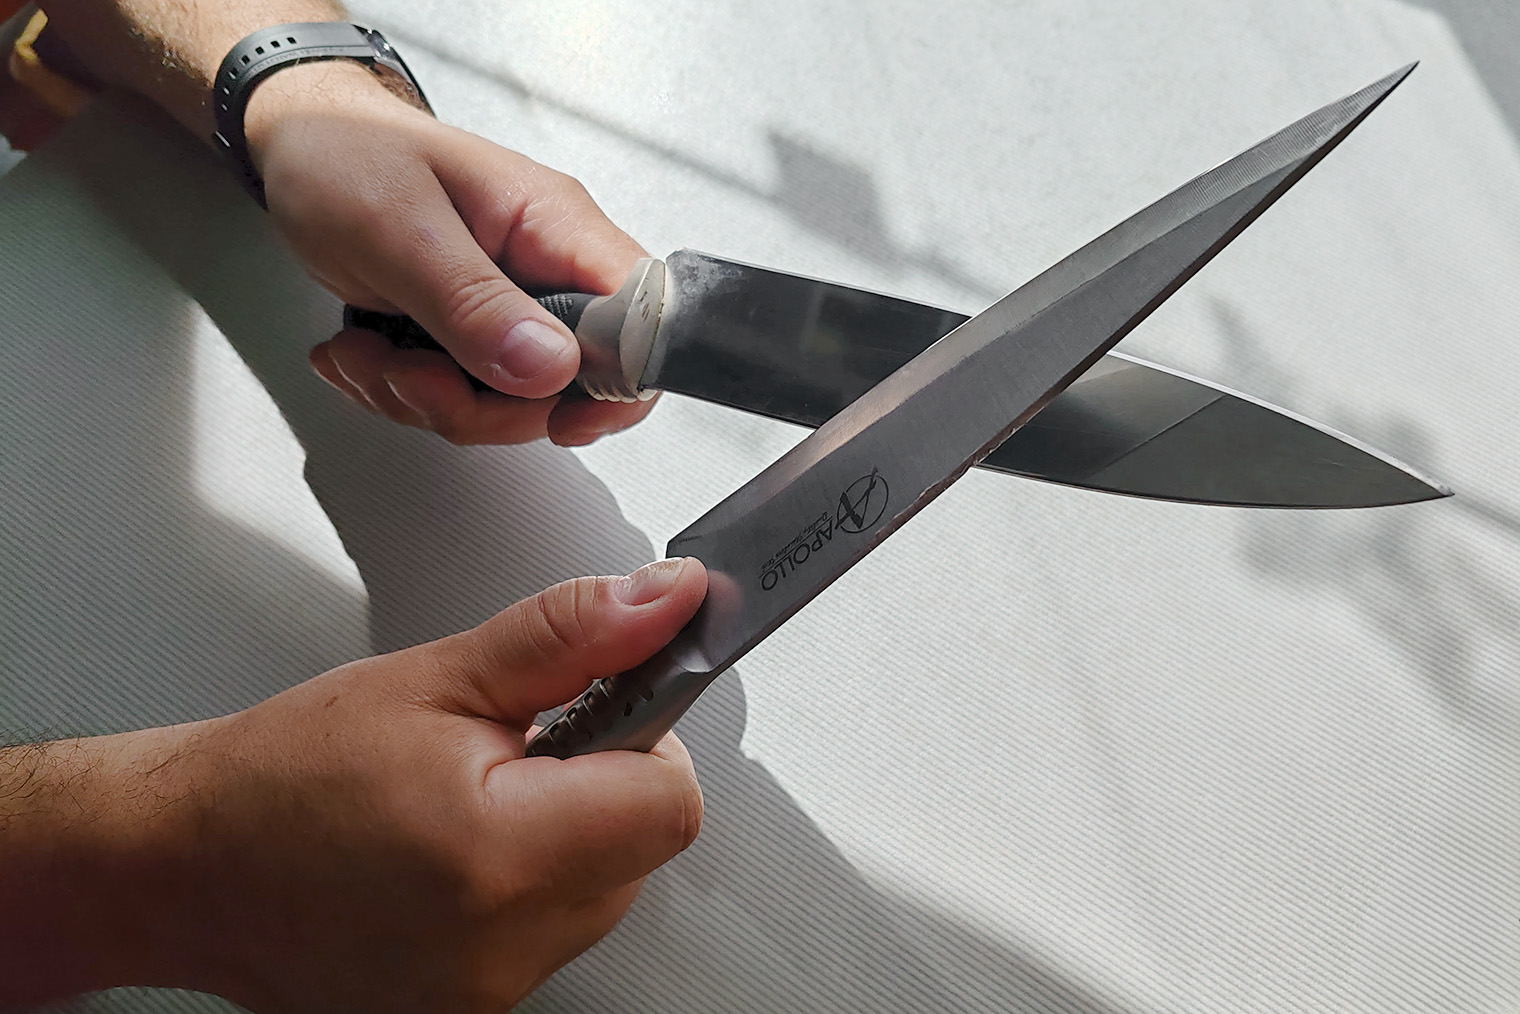 Ведите лезвие ножа на себя по обуху второго ножа. Обух — это верхняя незаточенная часть клинка